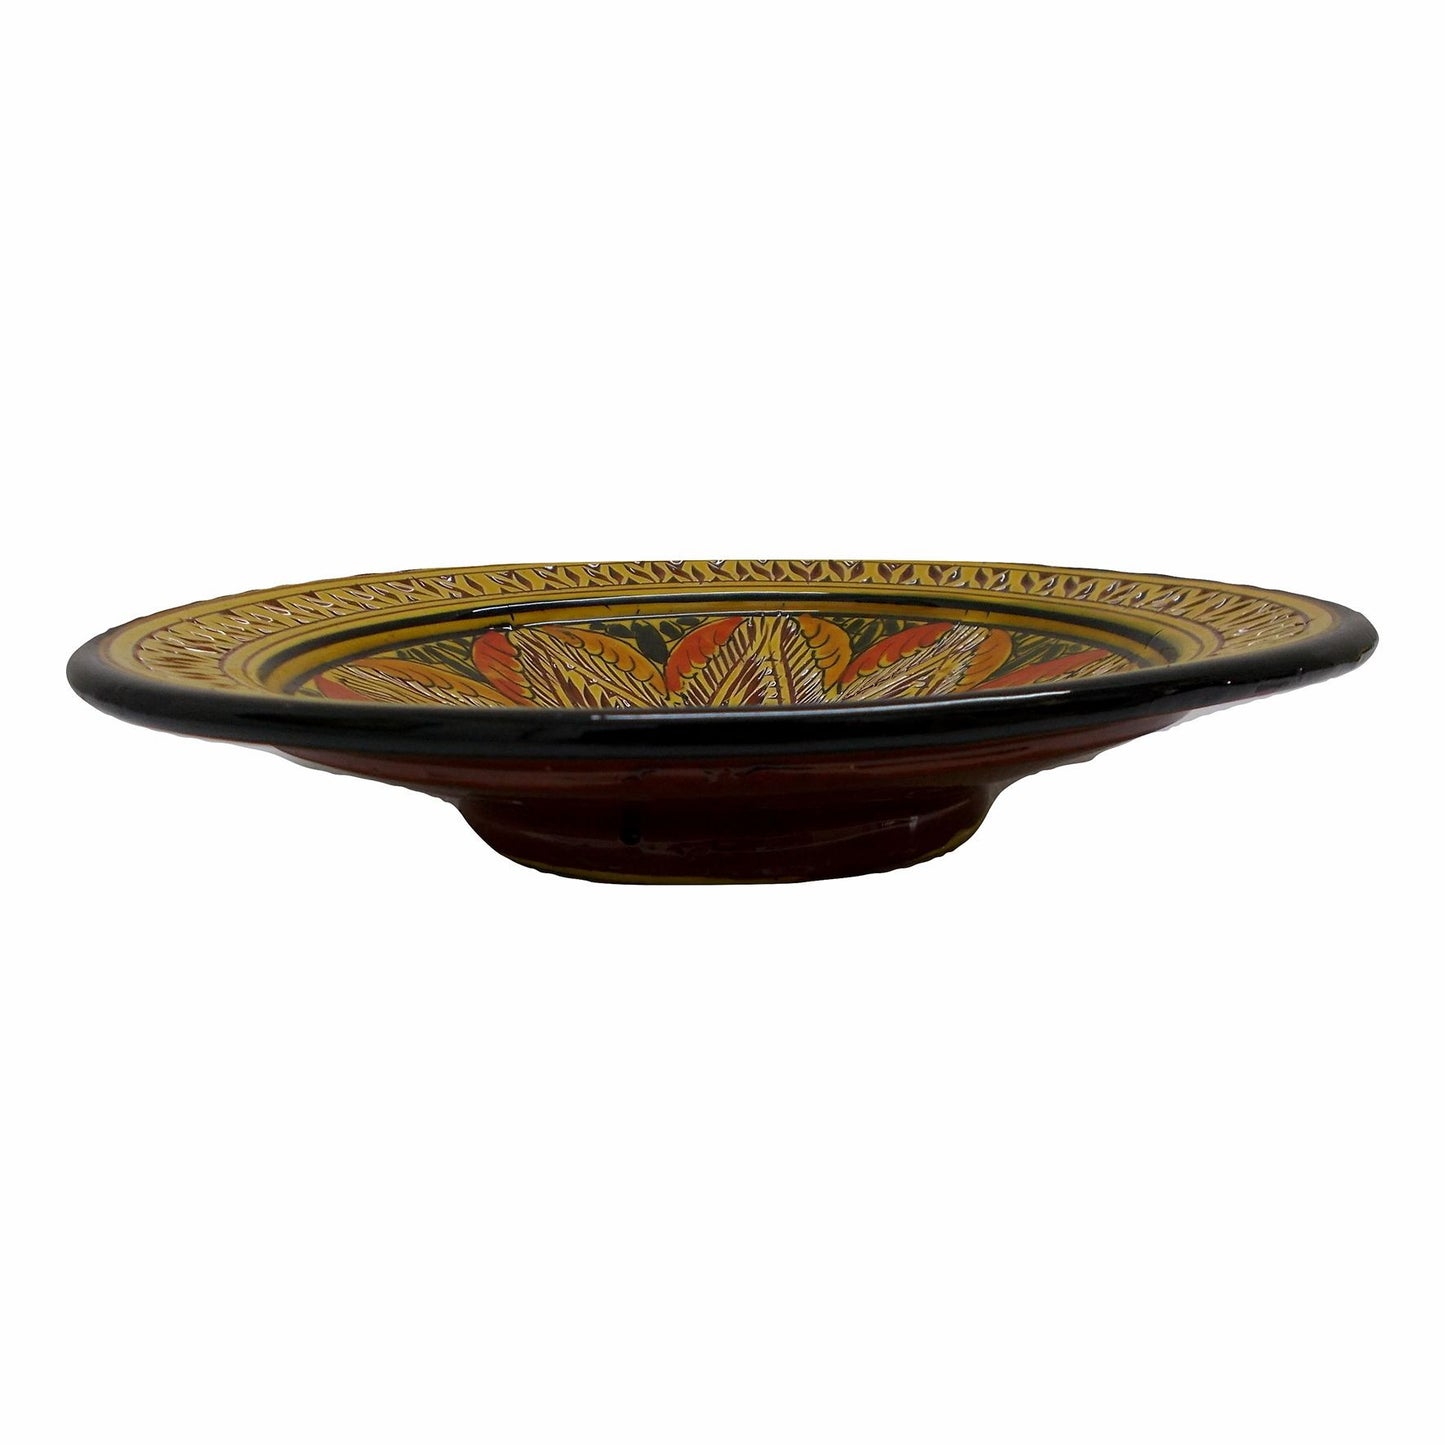 Artigianato Etnico Piatto Da Parete Ceramica Terre Cuite Marocchino 1509180957